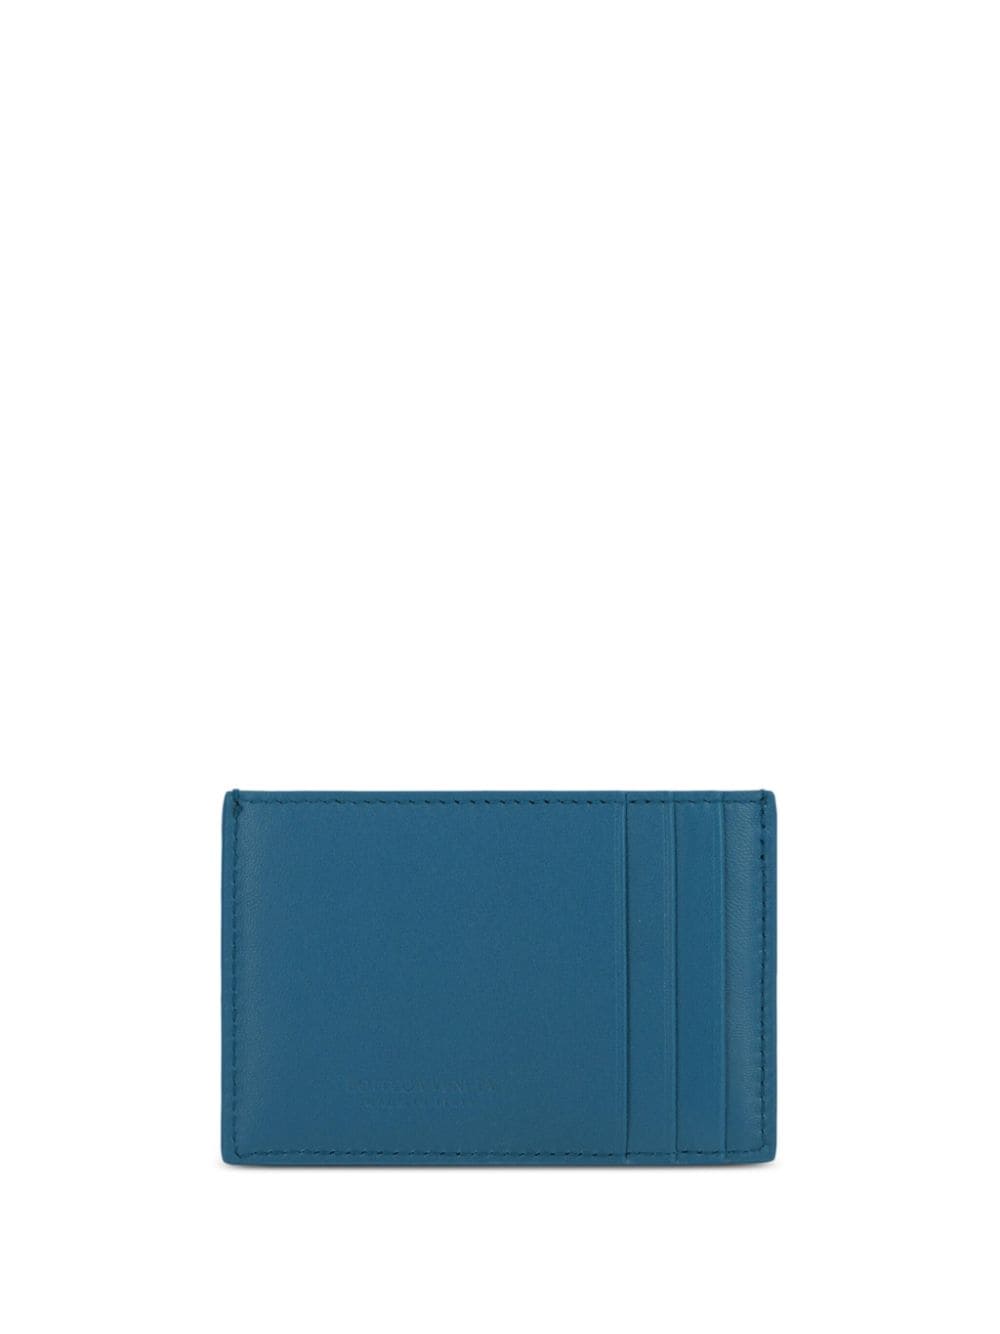 Bottega Veneta Intrecciato leather cardholder - Blauw